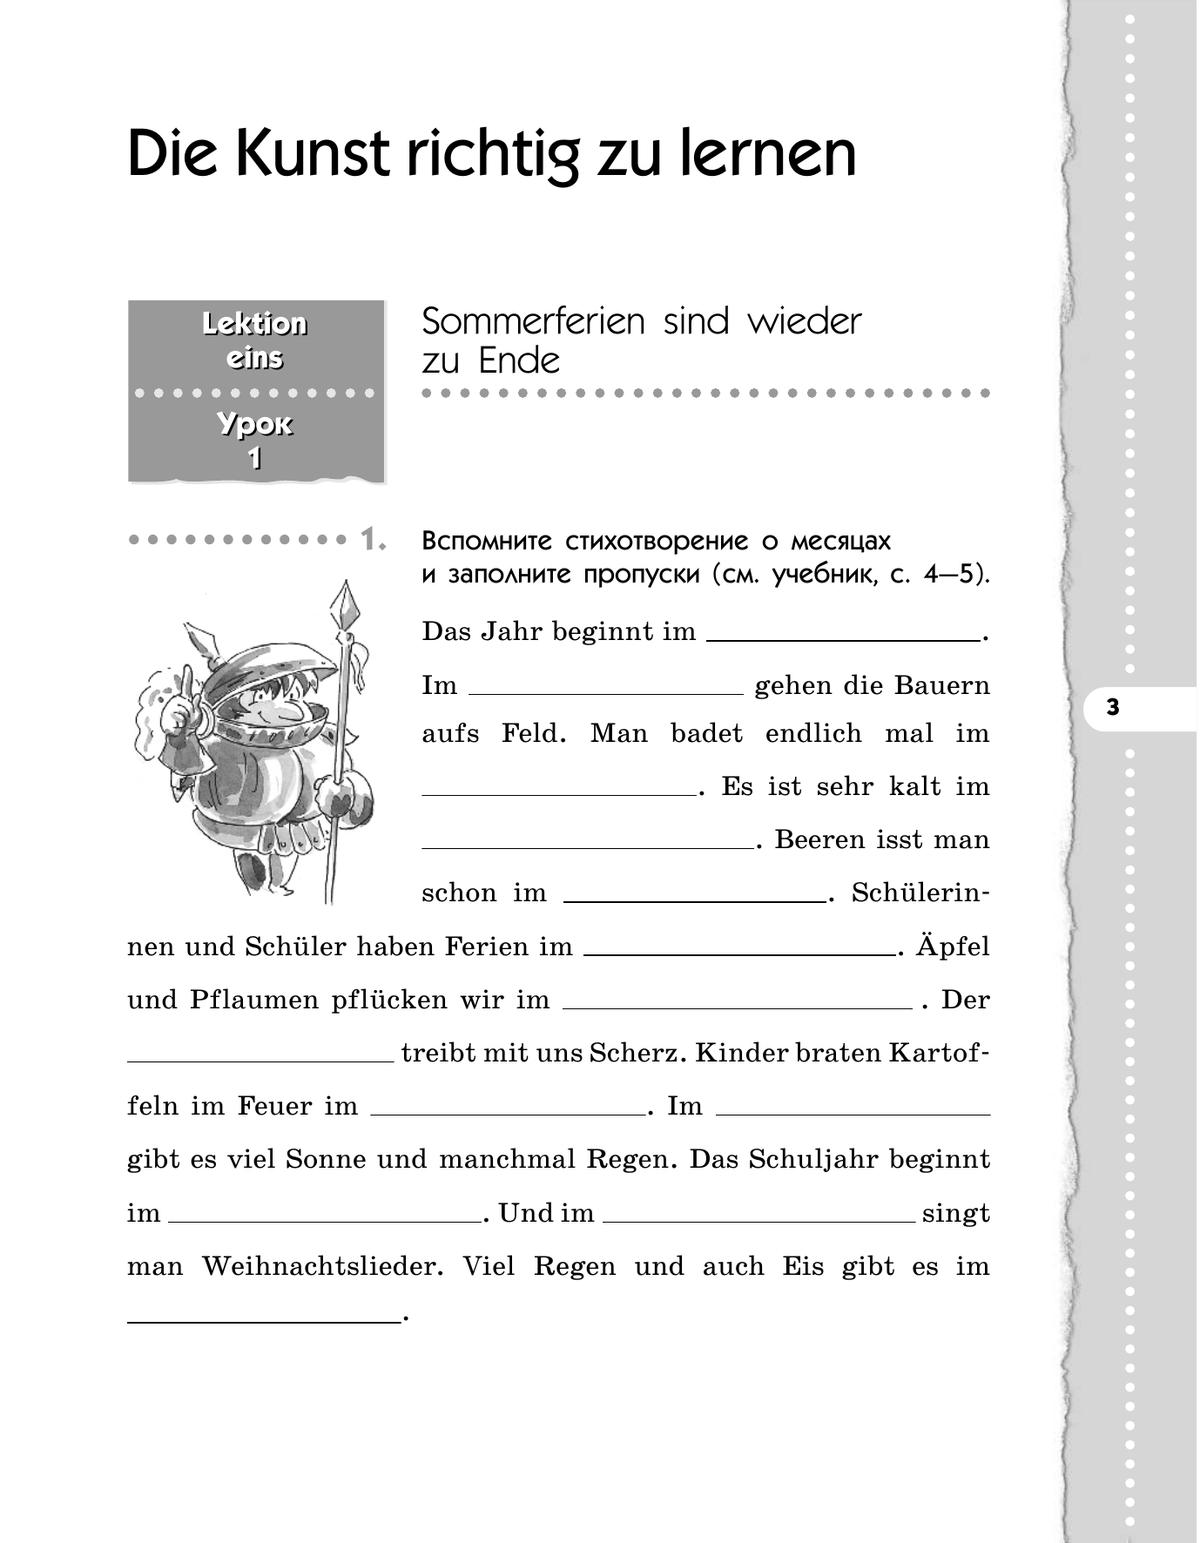 Немецкий язык. 7 класс. Рабочая тетрадь 7